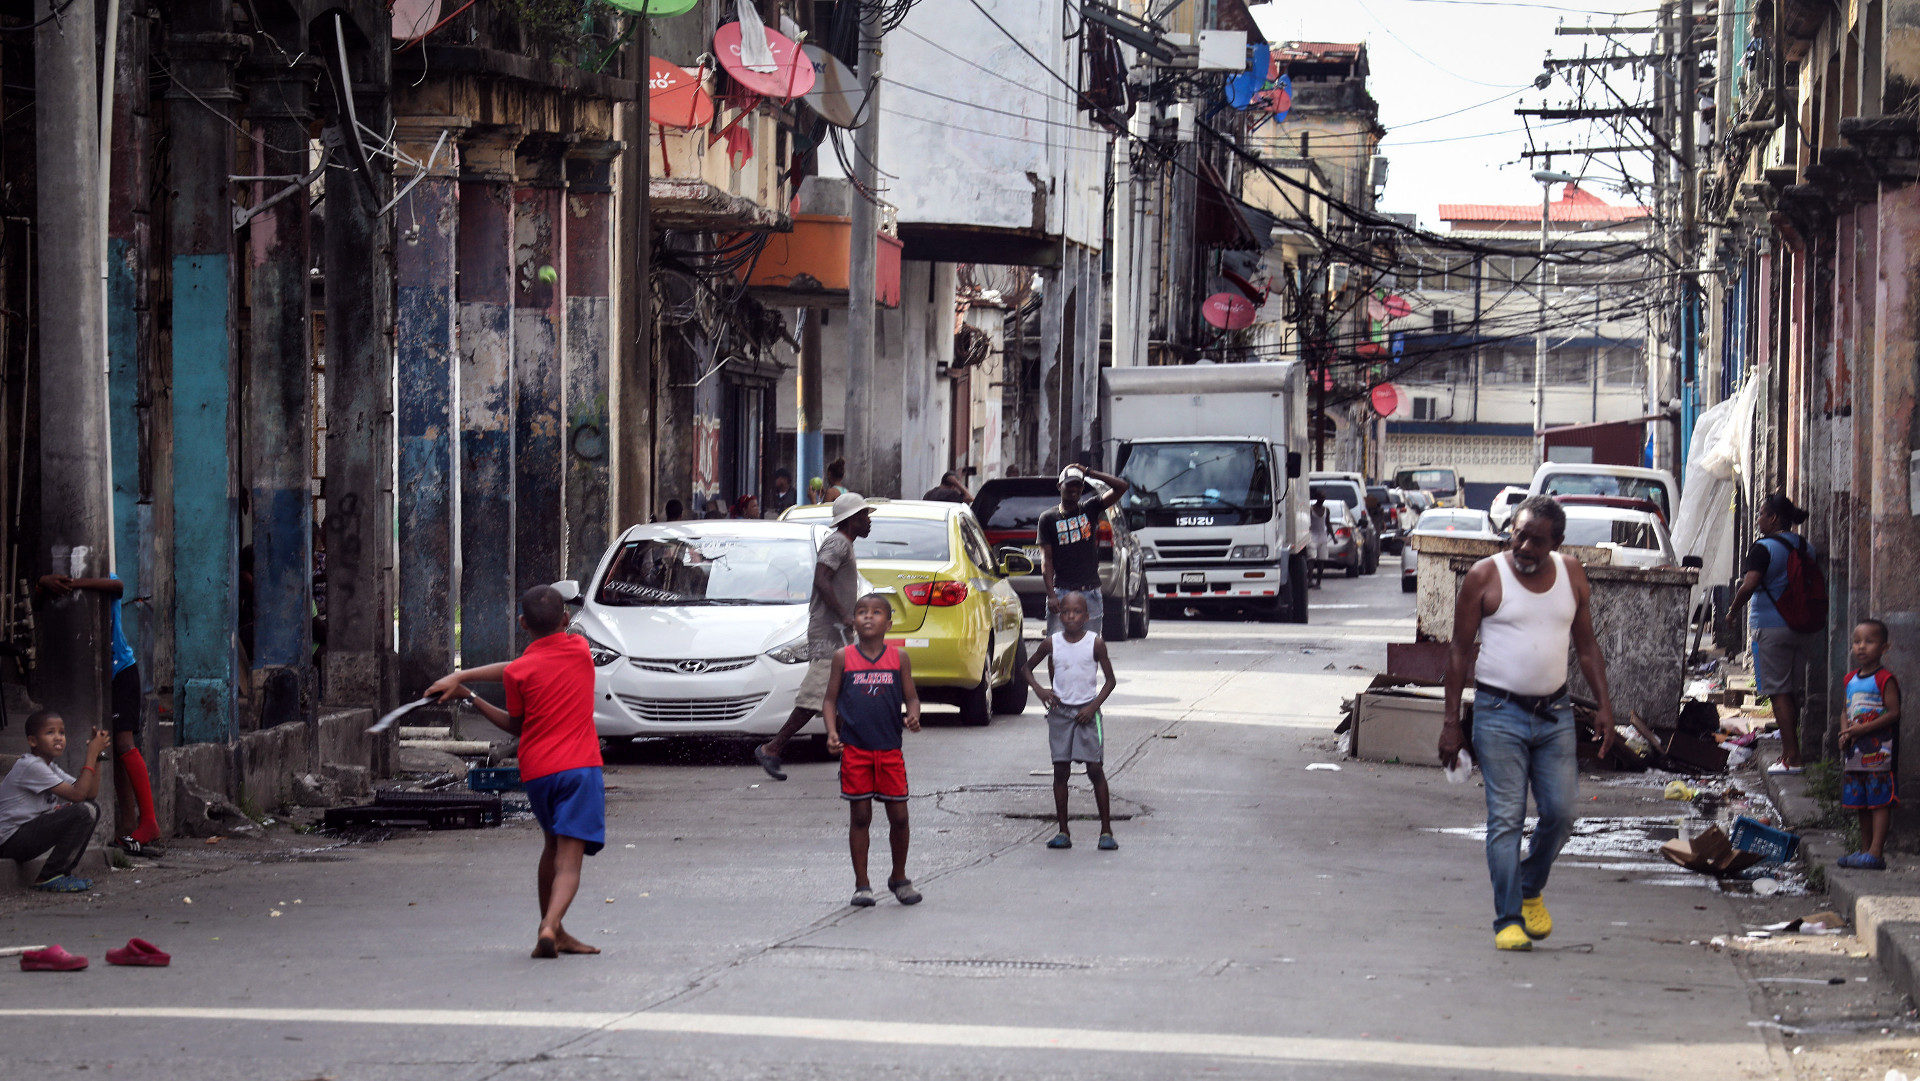 Kinder spielen in einem Armenviertel von Colon (Panama).